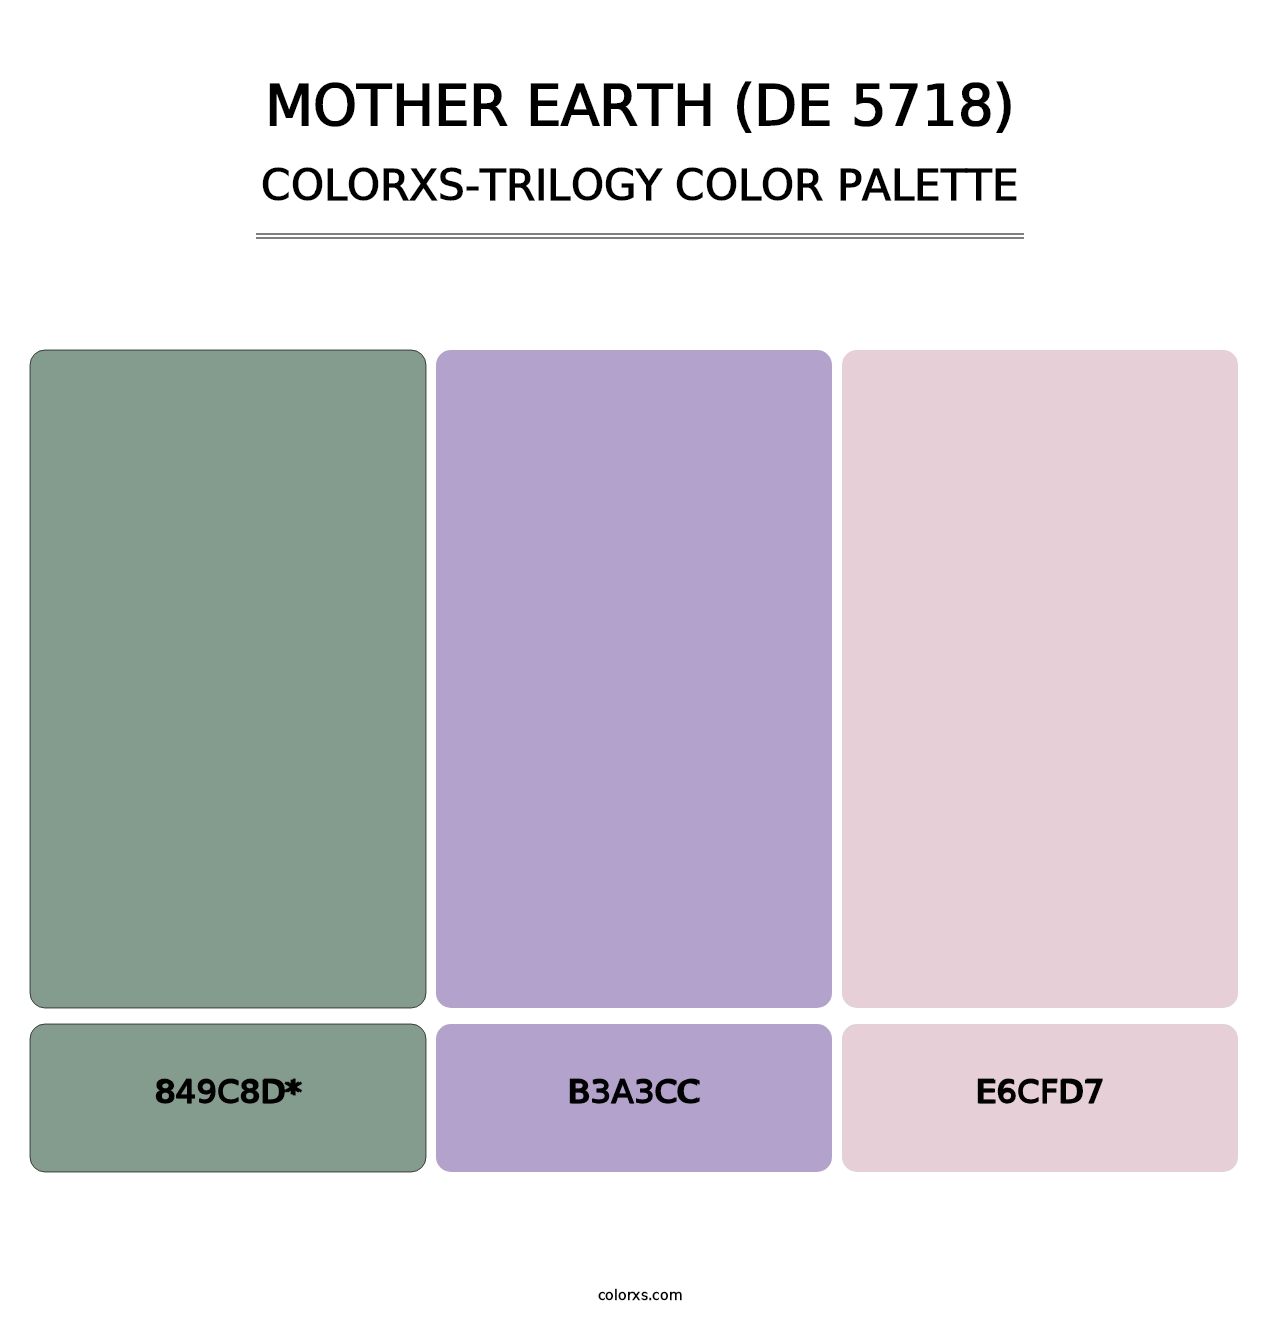 Mother Earth (DE 5718) - Colorxs Trilogy Palette